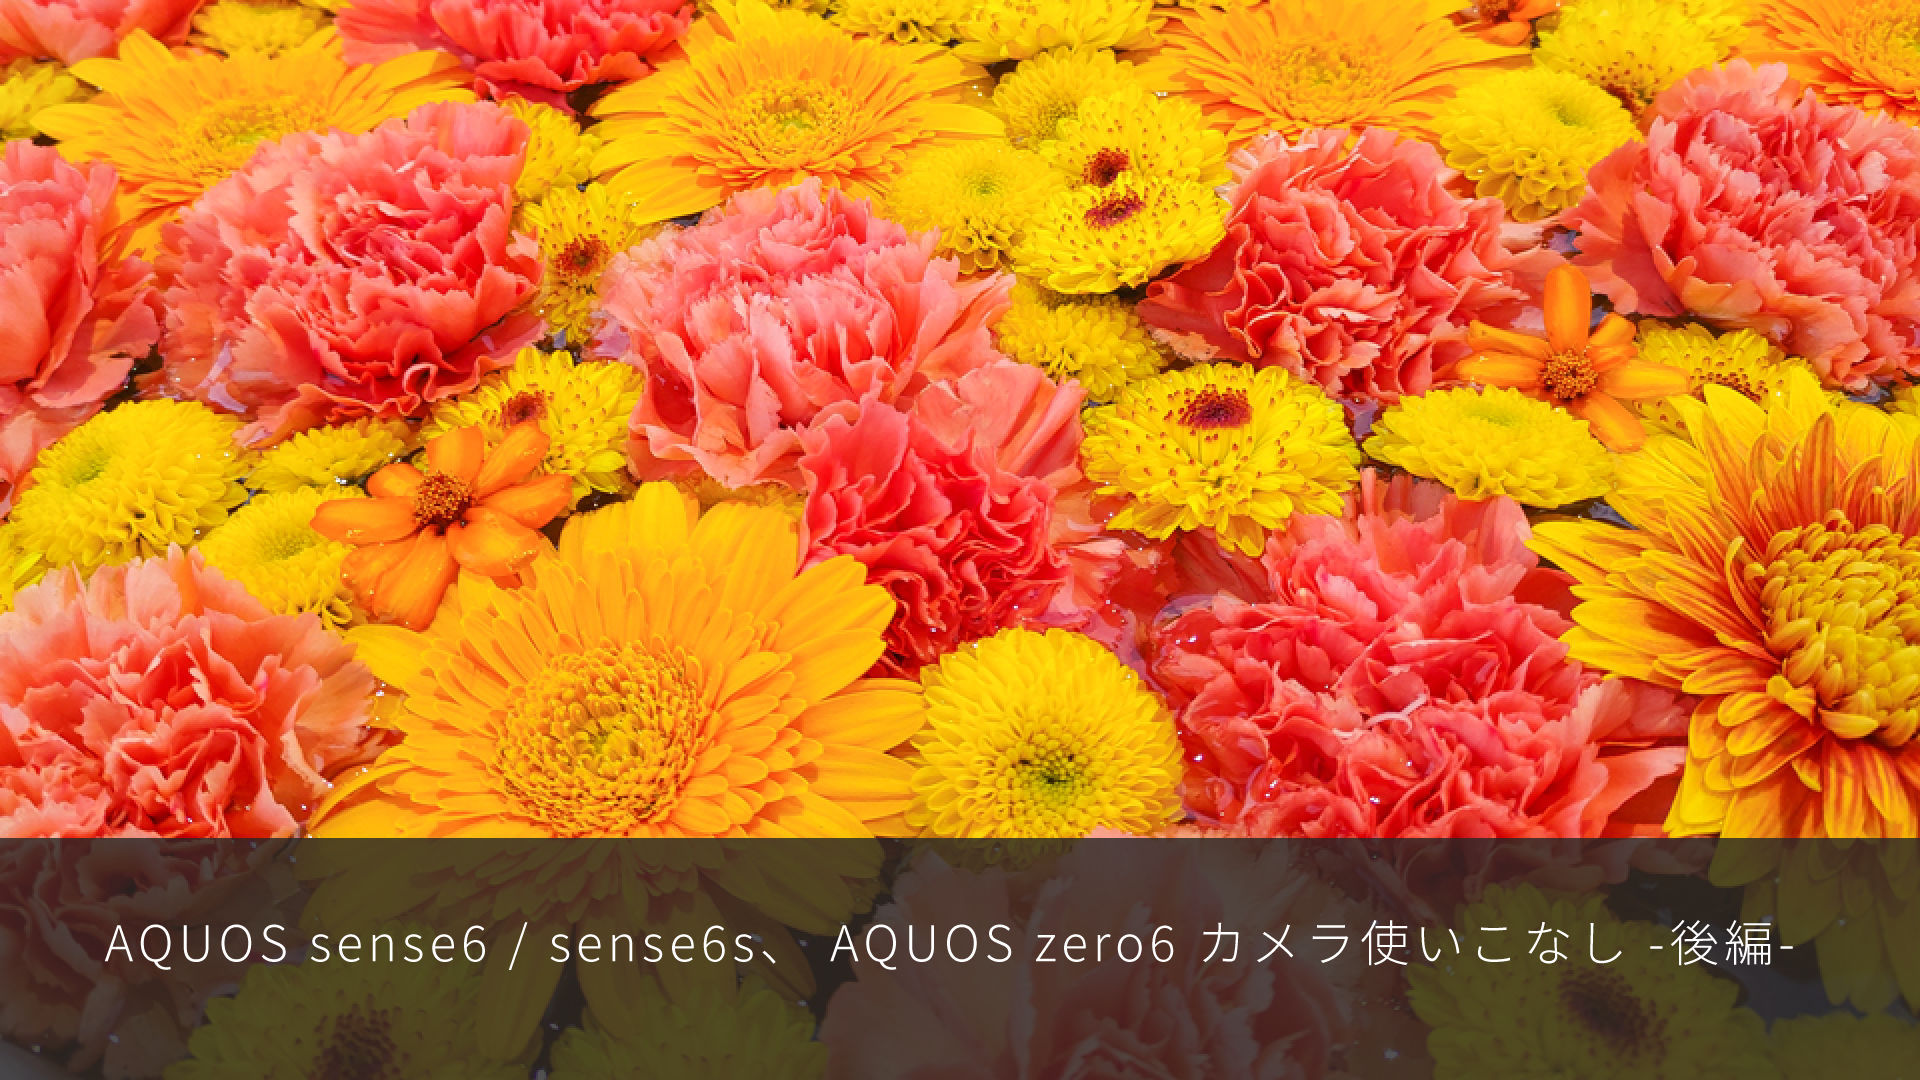 特集記事 AQUOS sense6、AQUOS zero6 カメラ使いこなし後編を更新しました